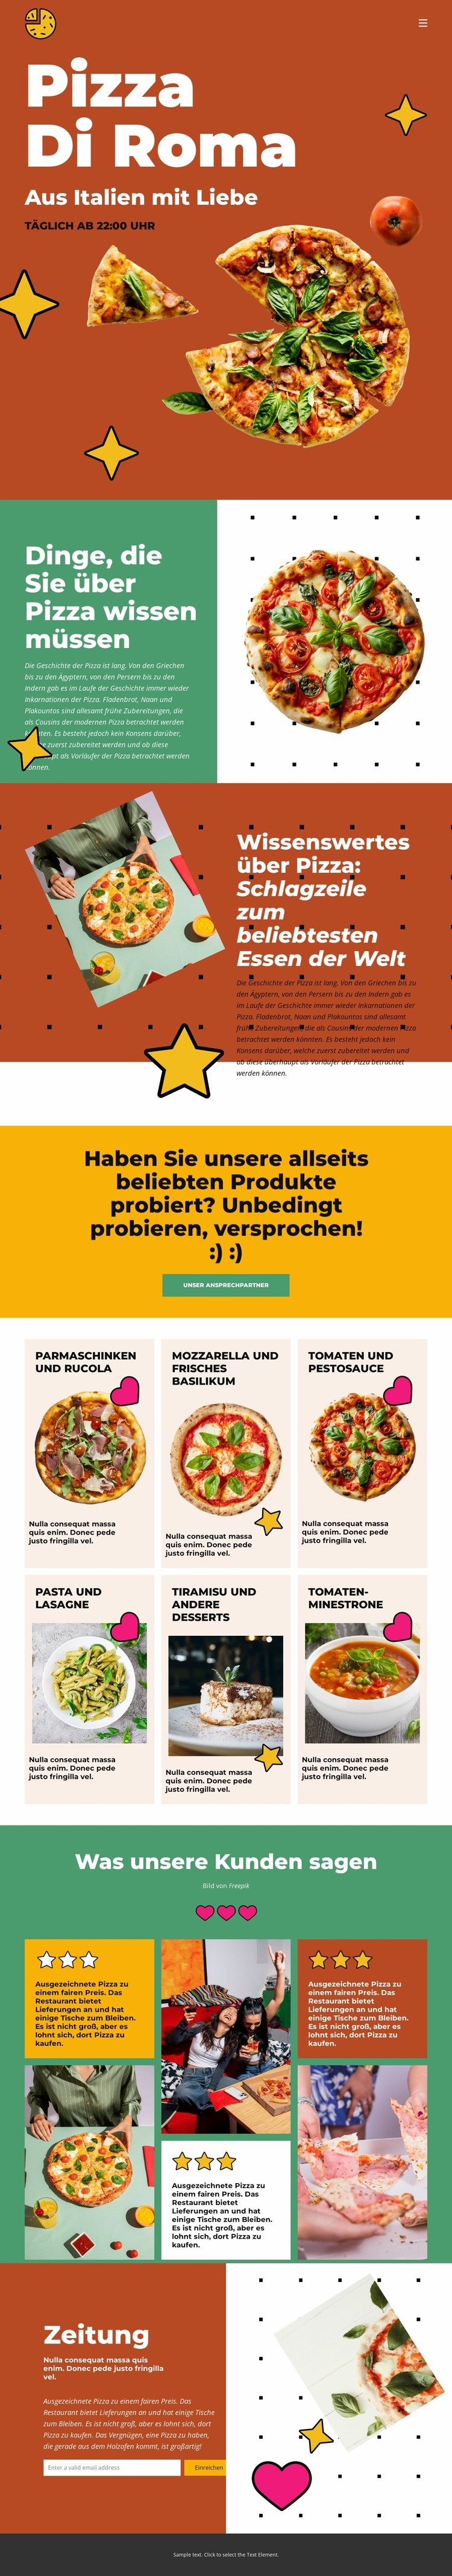 Dinge, die Sie über Pizza wissen müssen HTML Website Builder